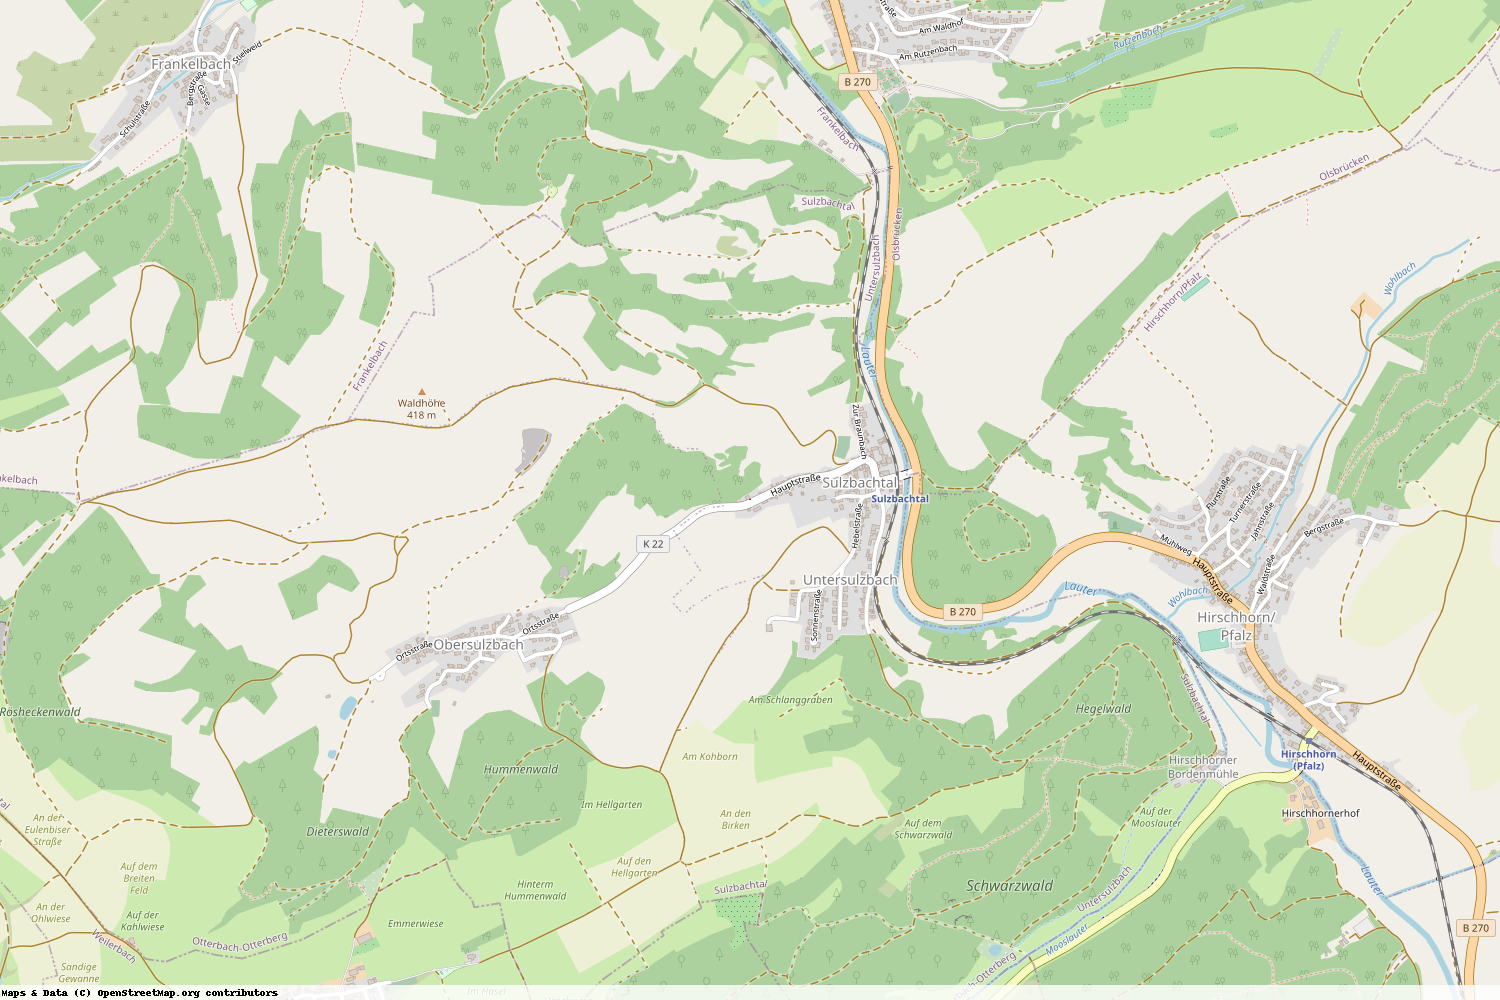 Ist gerade Stromausfall in Rheinland-Pfalz - Kaiserslautern - Sulzbachtal?